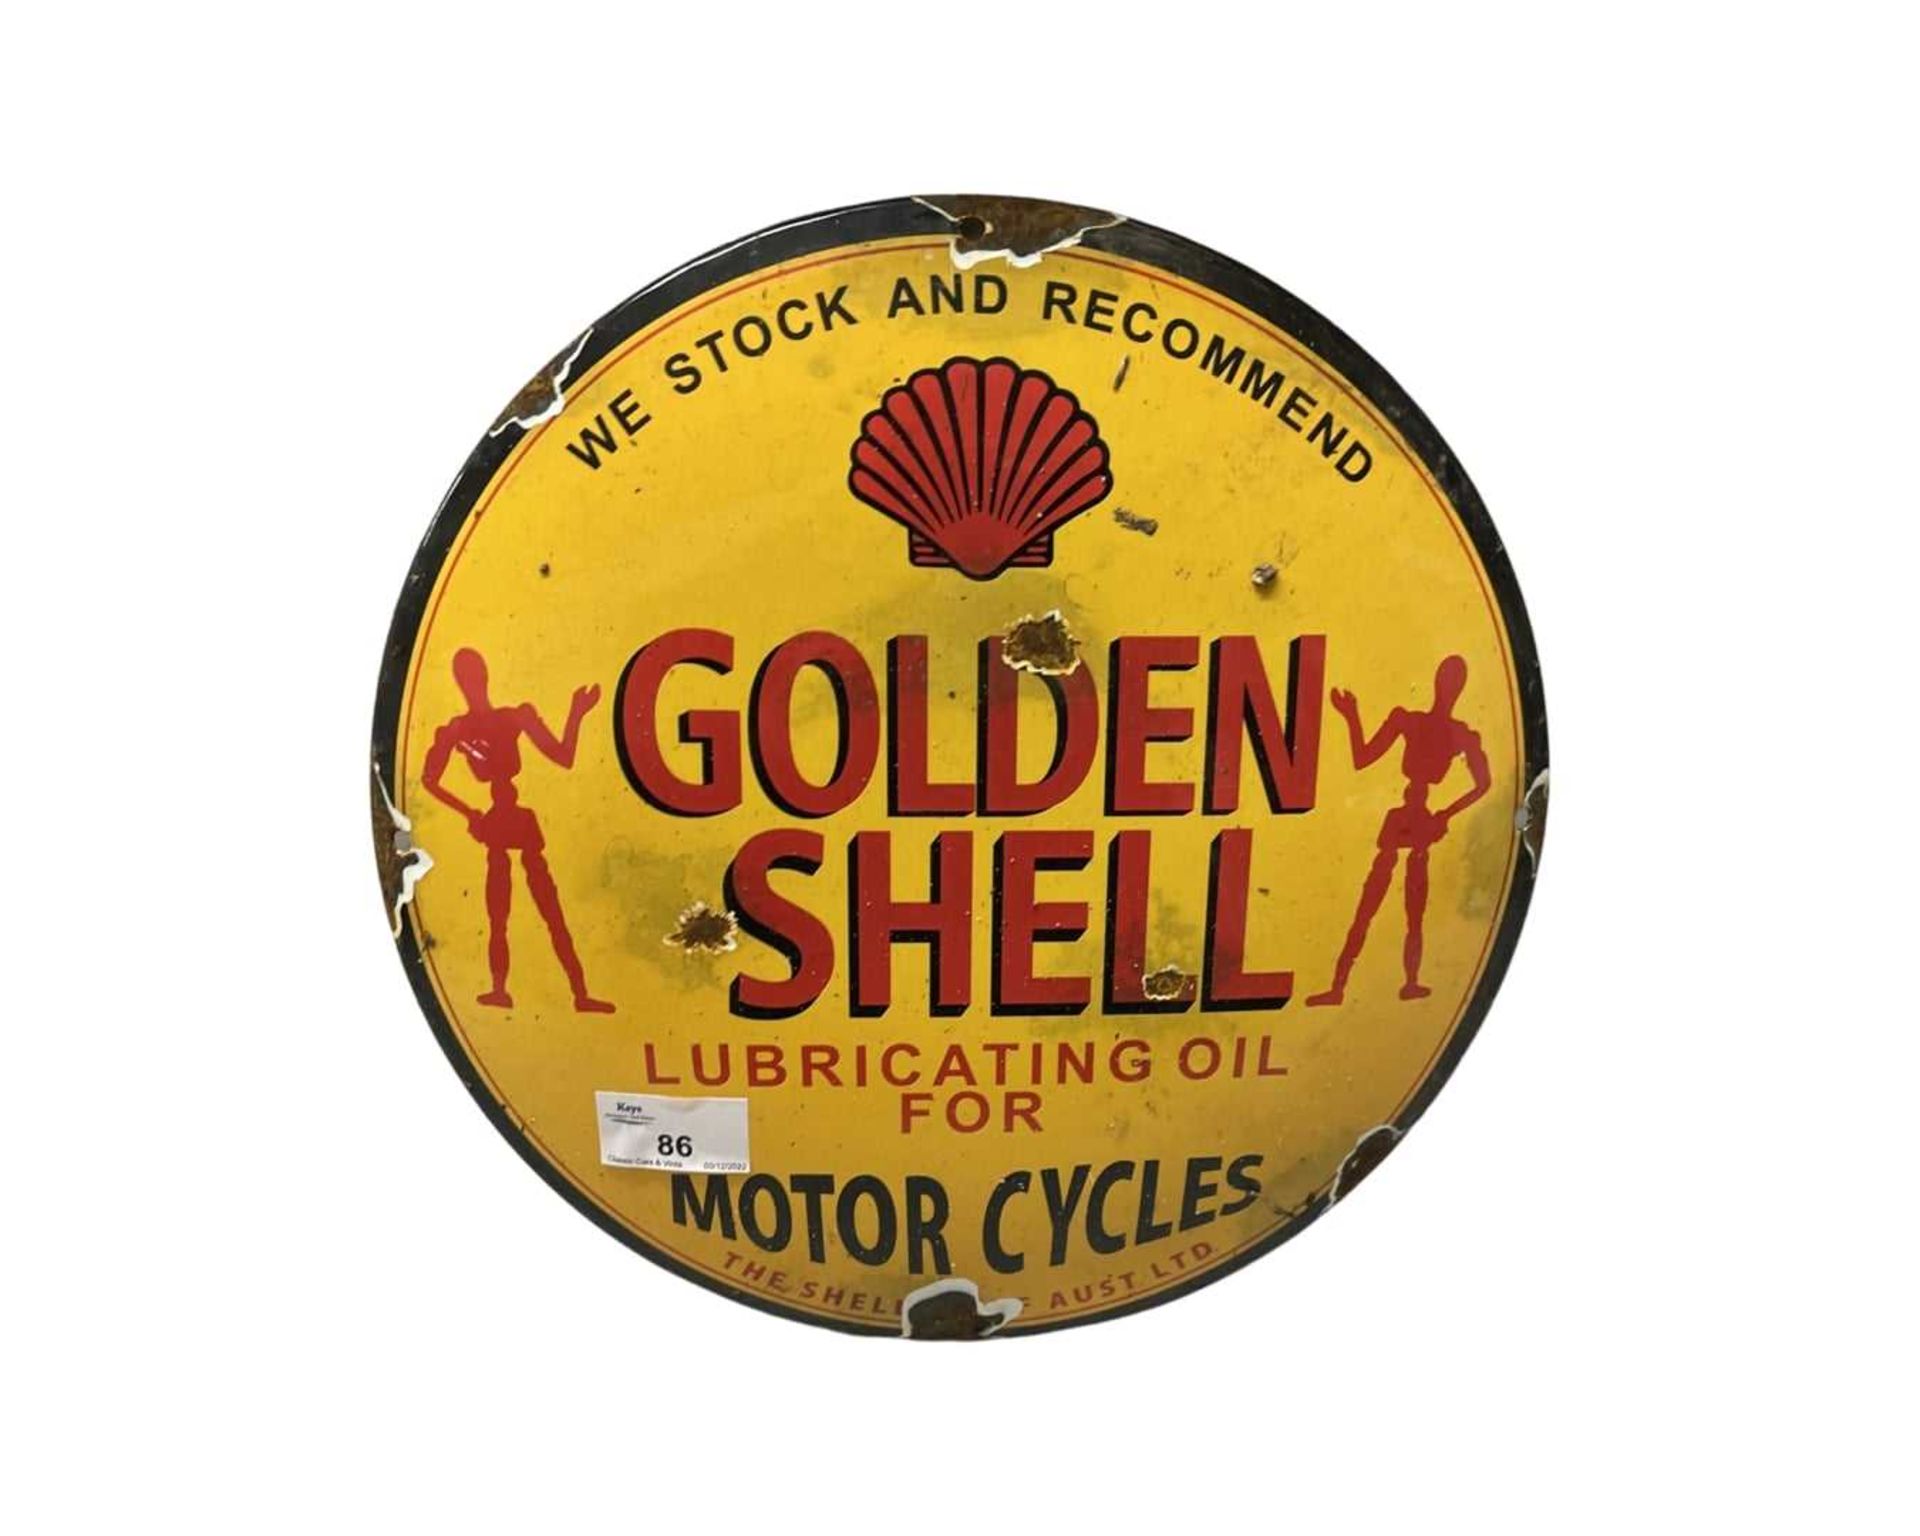 Golden Shell enamel sign